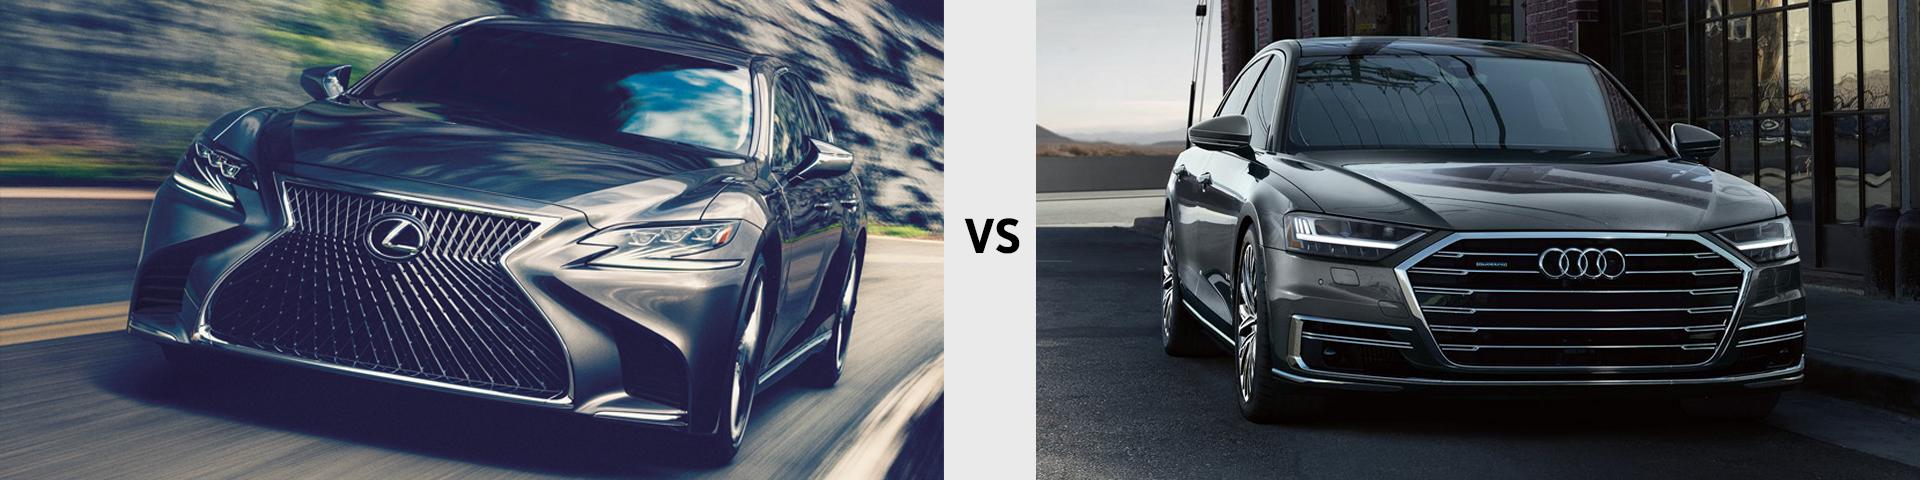 2019 Lexus LS vs 2019 Audi A8